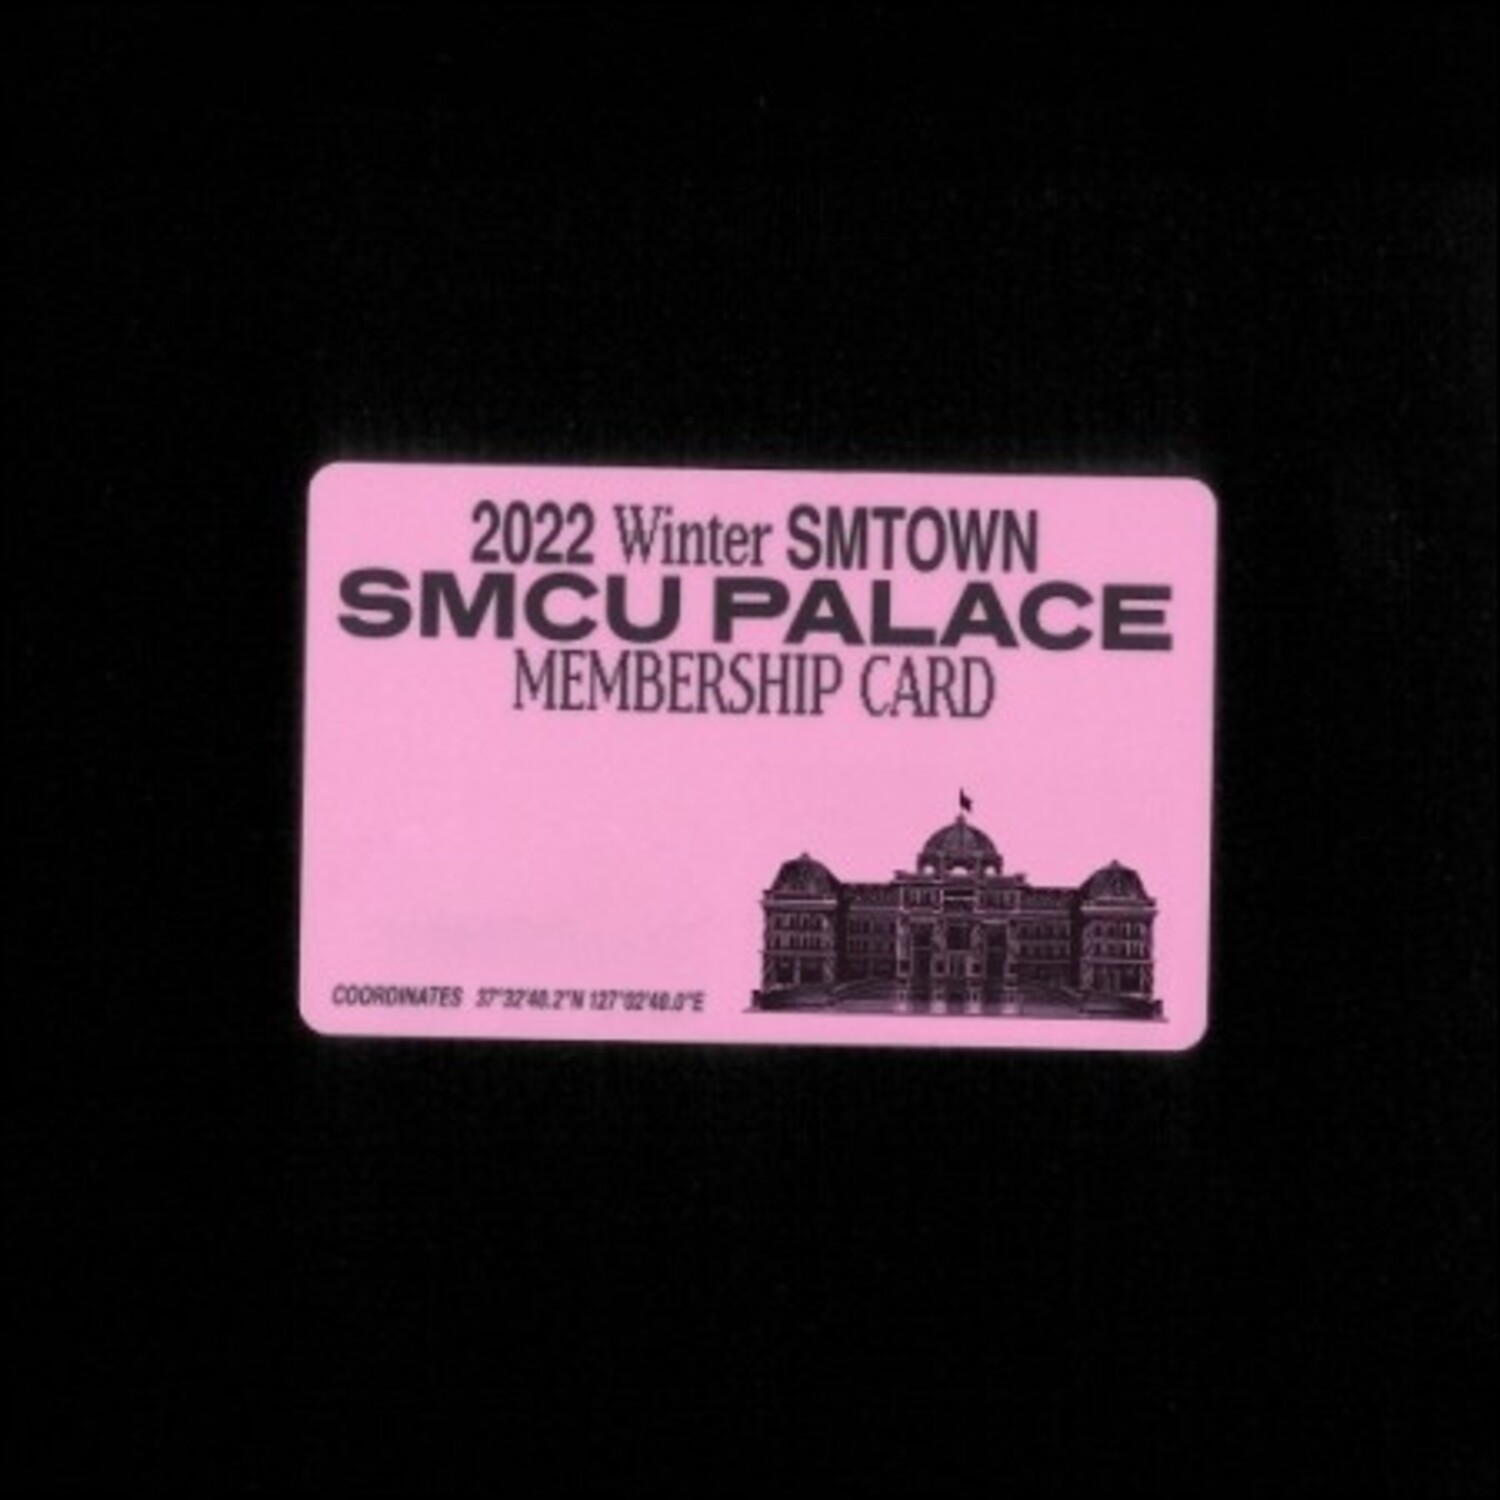 샤이니 온유, 키, 민호 (SHINee) - [2022 Winter SMTOWN : SMCU PALACE] (GUEST. SHINee (ONEW, KEY, MINHO)) (Membership Card Ver.) (스마트앨범)